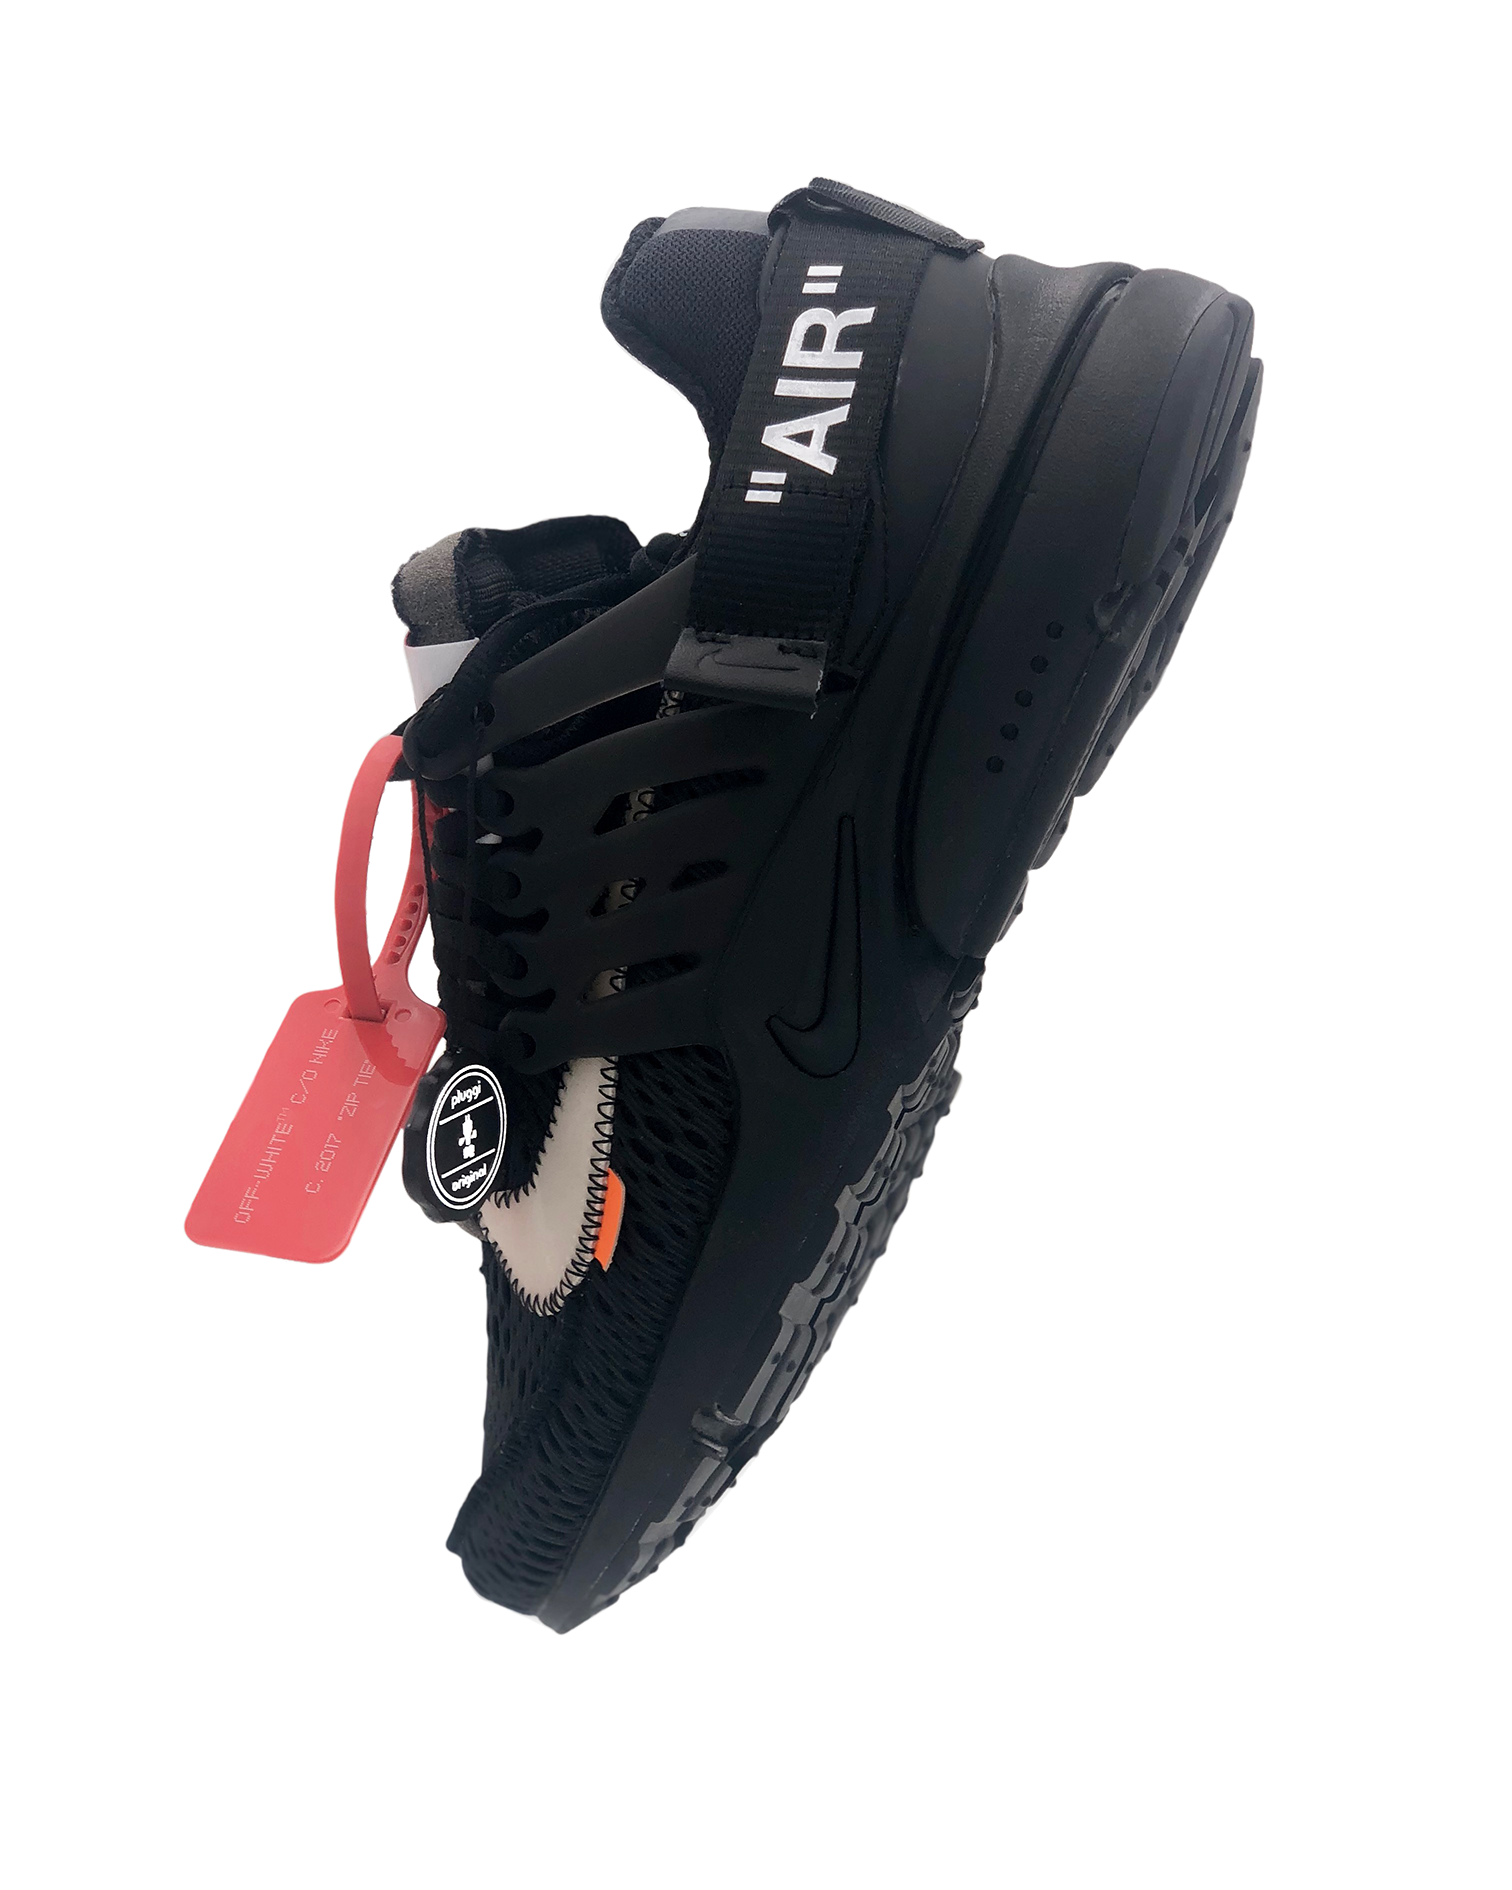 Legit Check Guide: So prüft ihr den neuen Off-White x Nike Air Presto "Black" auf seine Echtheit